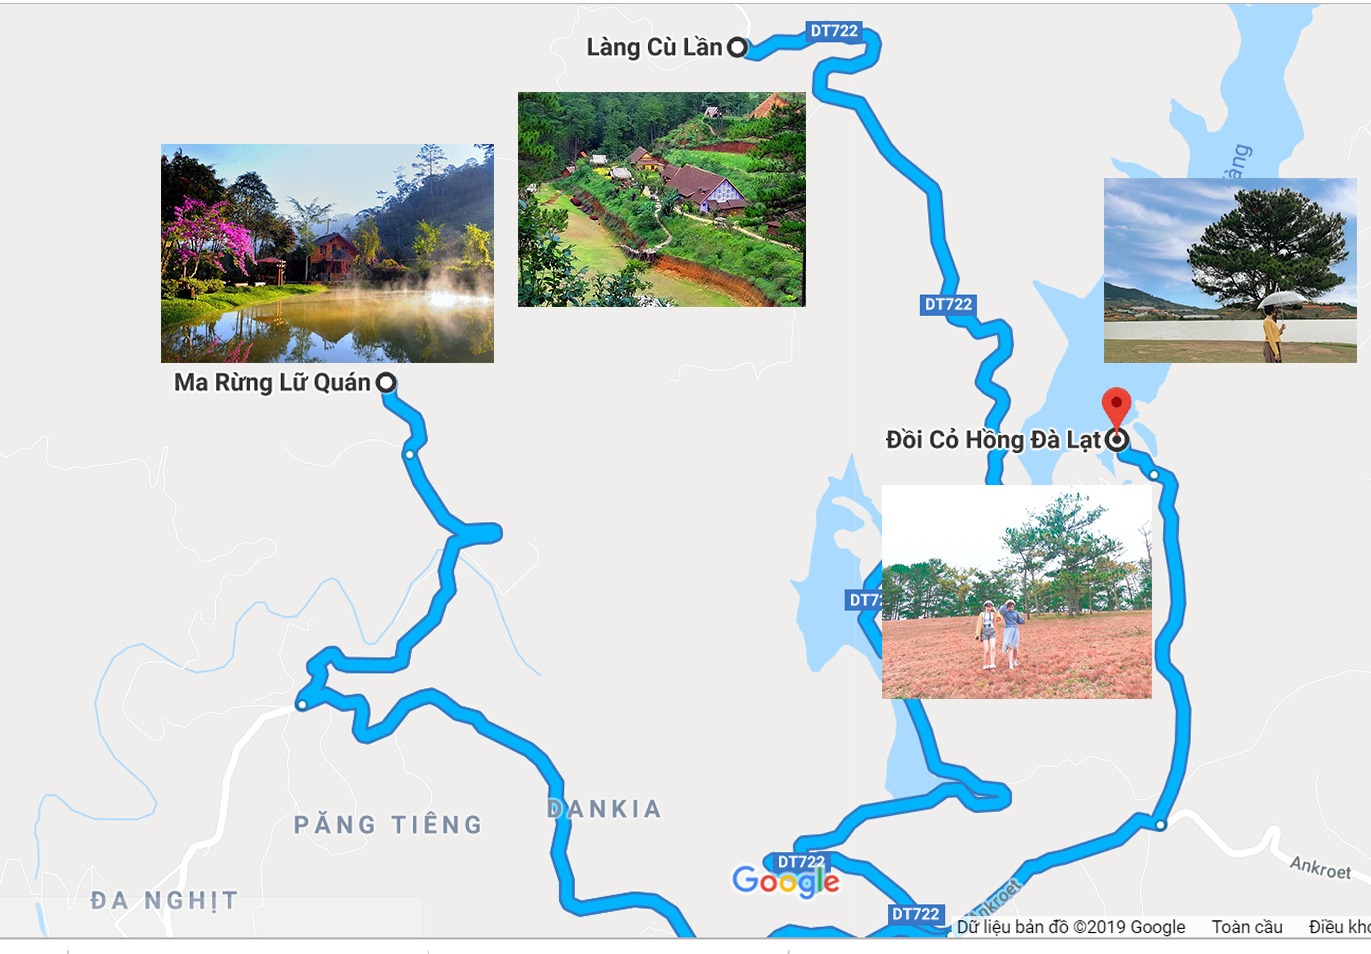 Đà Lạt đang trở thành điểm đến du lịch hot nhất tại Việt Nam, với nhiều địa điểm mới và hấp dẫn được khai thác để tạo ra trải nghiệm độc đáo cho khách du lịch. Hãy xem hình ảnh liên quan để tìm hiểu và dự đoán những địa điểm du lịch mới nhất của phường Đà Lạt.